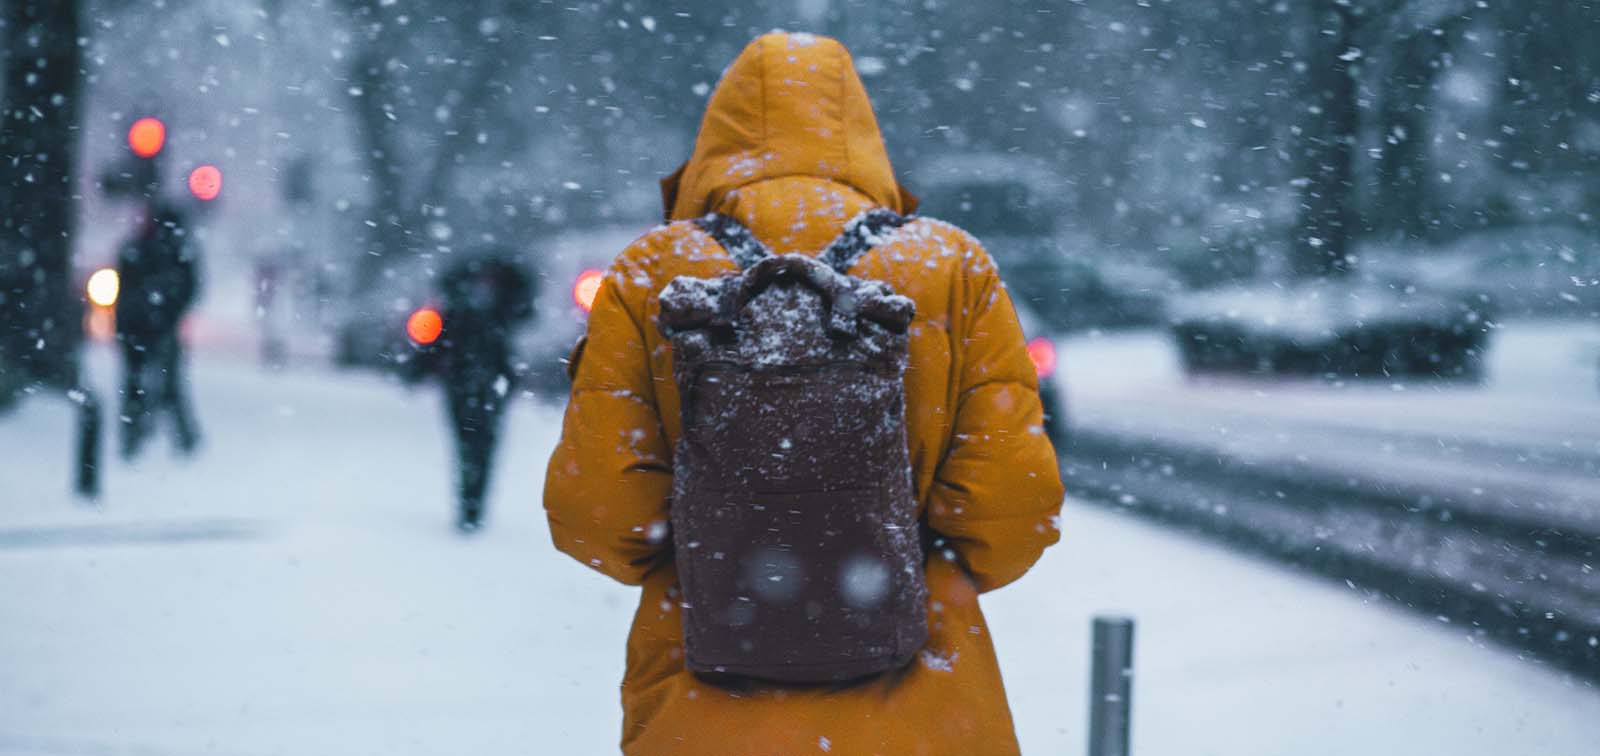 Qué efectos tiene el frío sobre nuestra salud? - Blog - ISGLOBAL